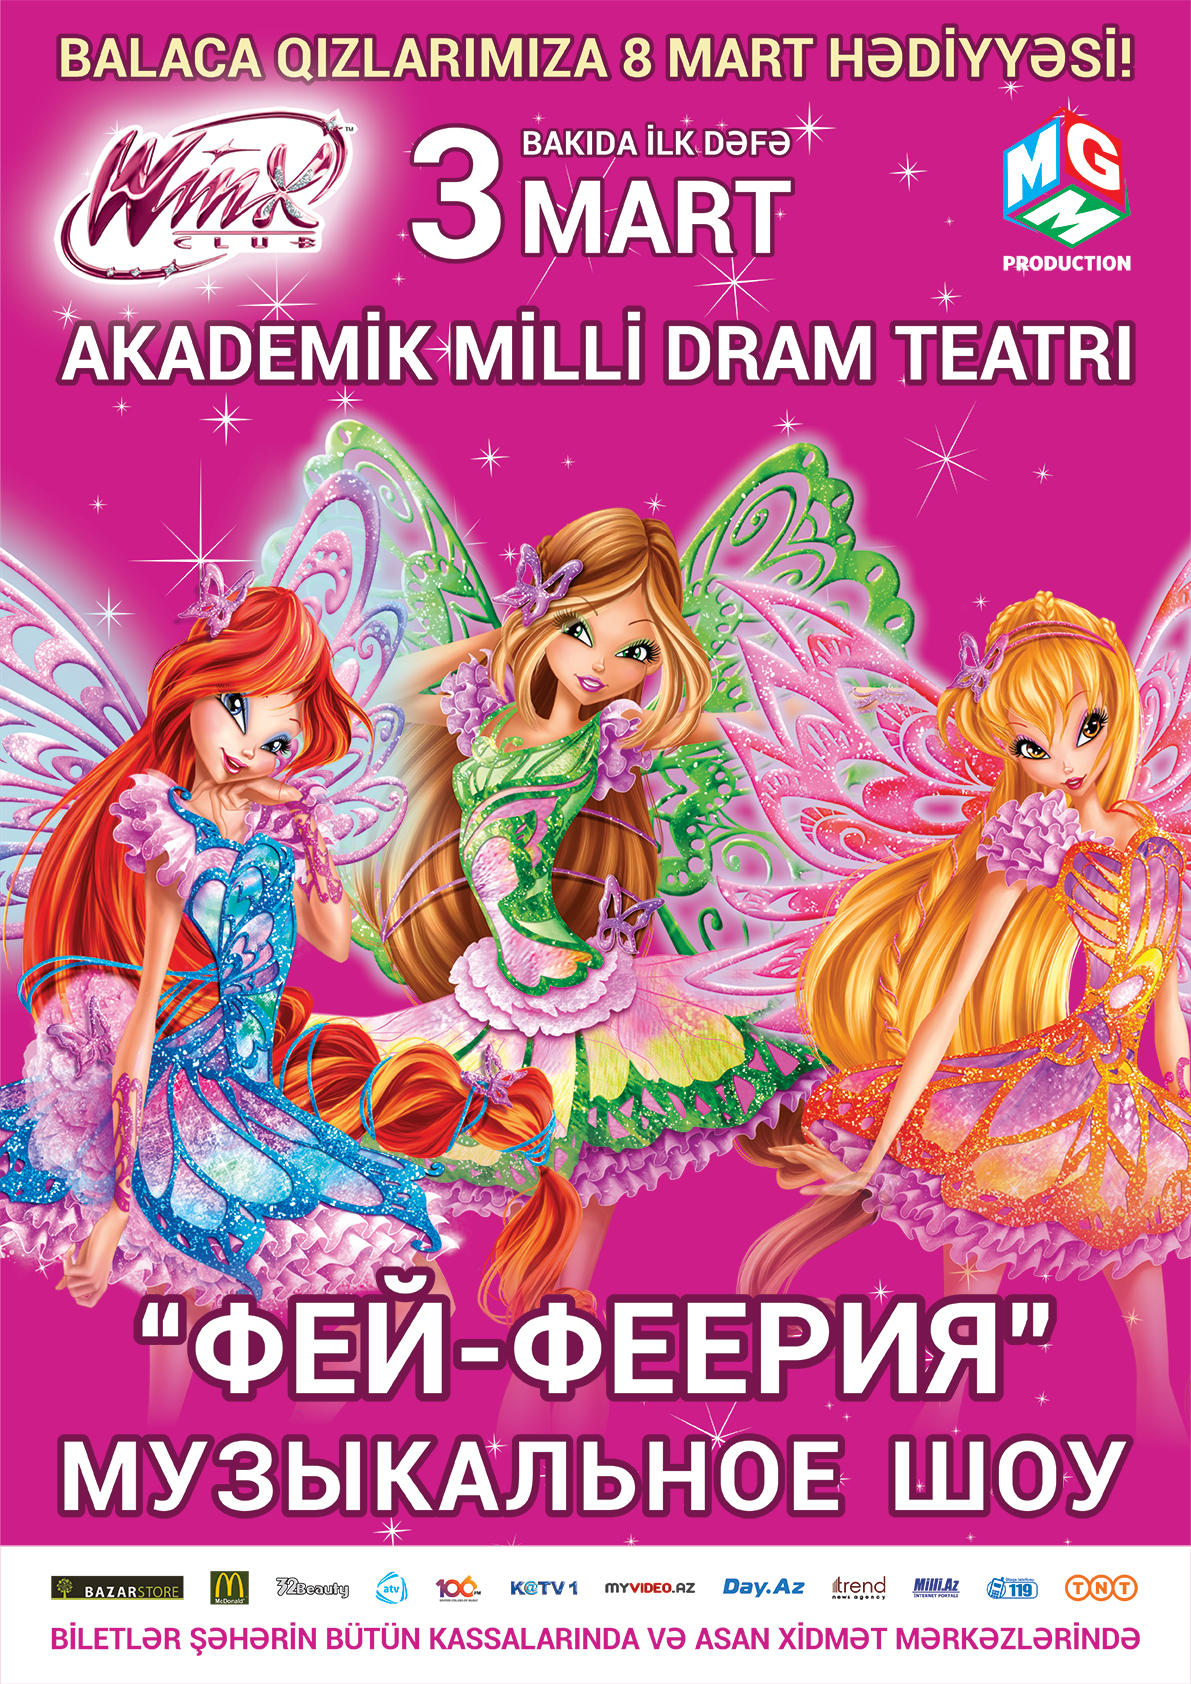 В Баку пройдет бесплатный фотосет с феями Winx